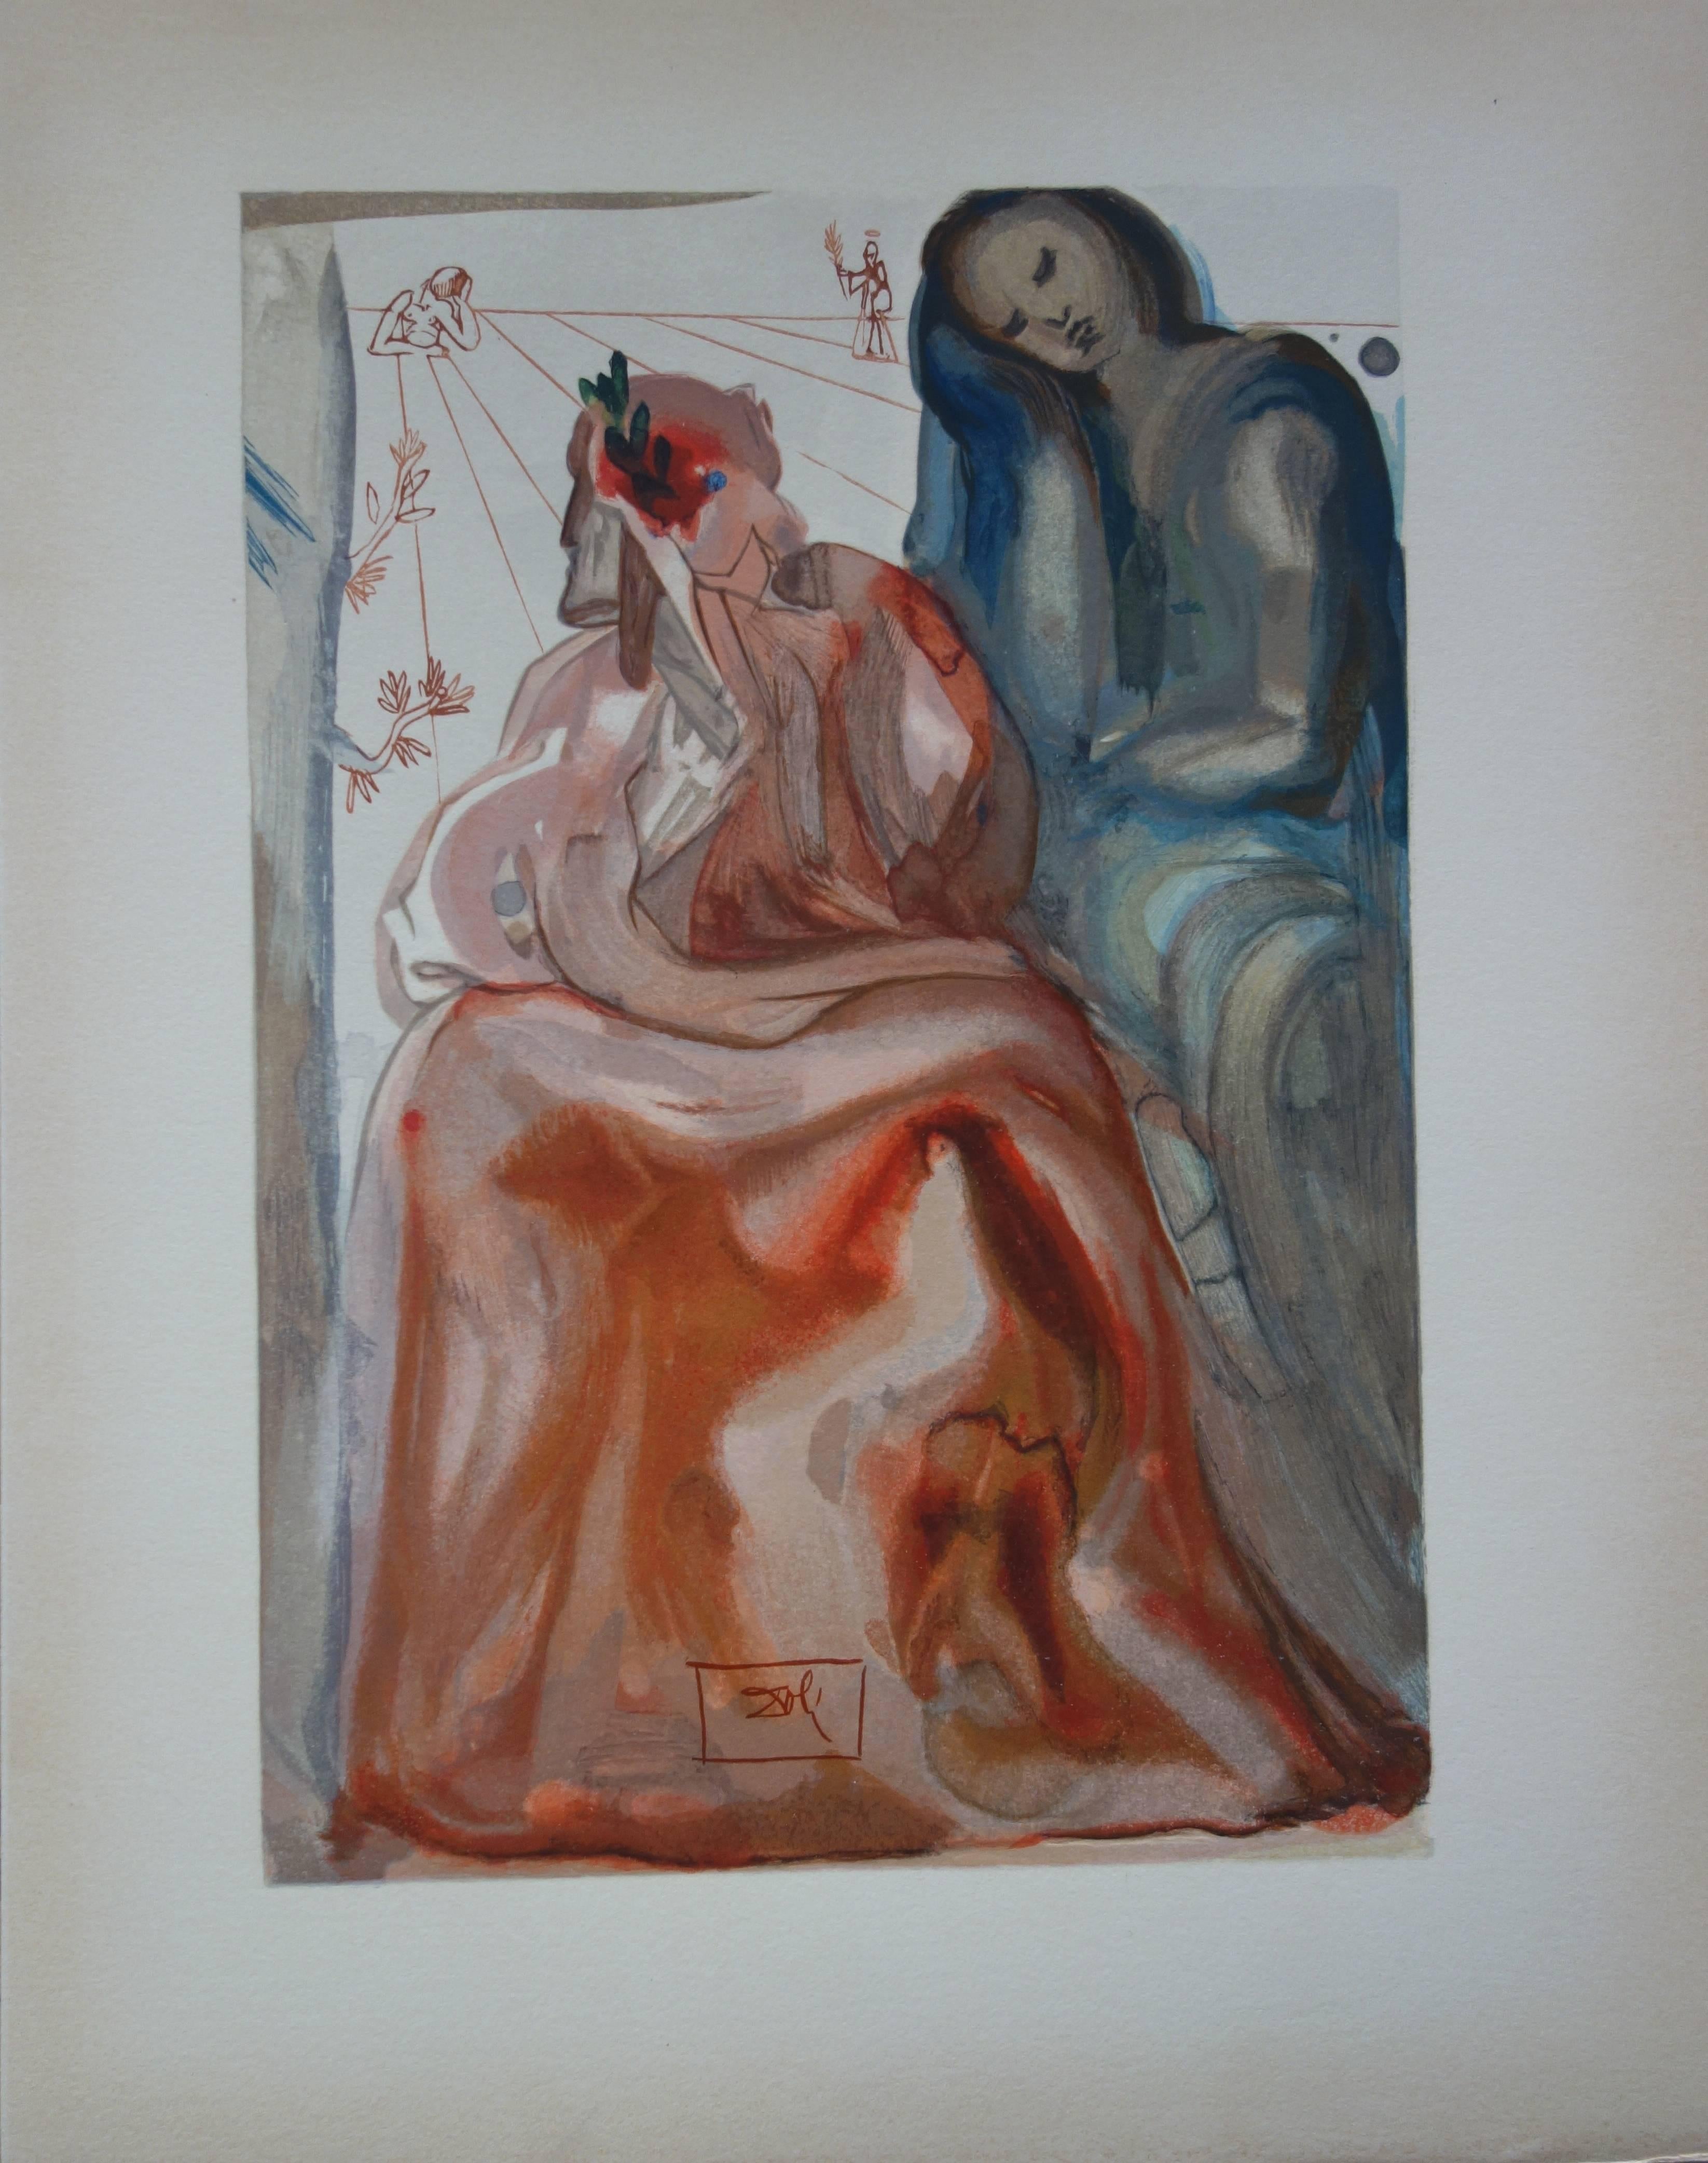 Salvador Dalí Figurative Print - Purgatory 31 - Dante's Confession - Color woodcut - 1963